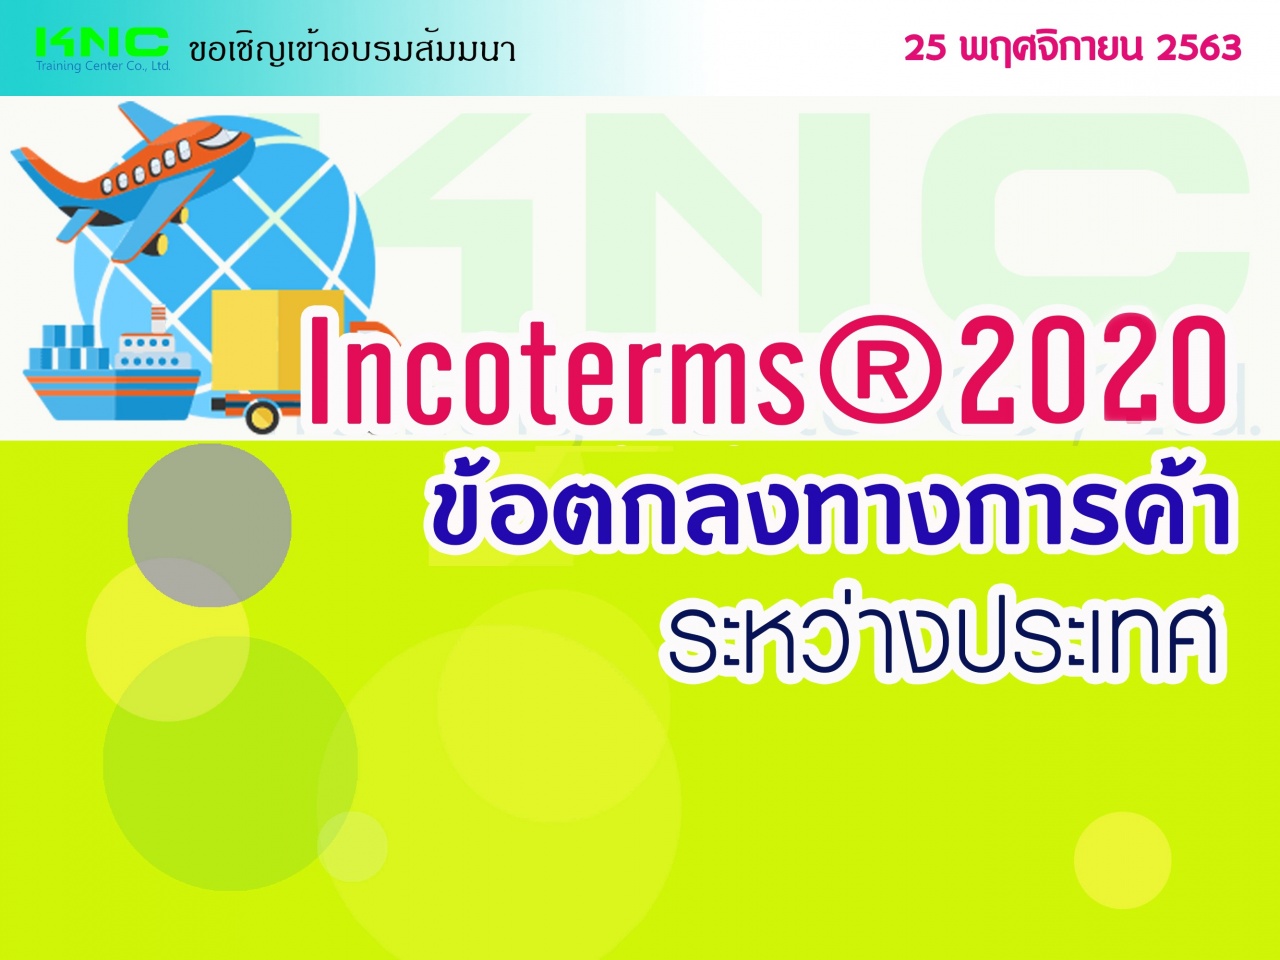 INCOTERMS ® 2020 (ข้อตกลงทางการค้าระหว่างประเทศ)